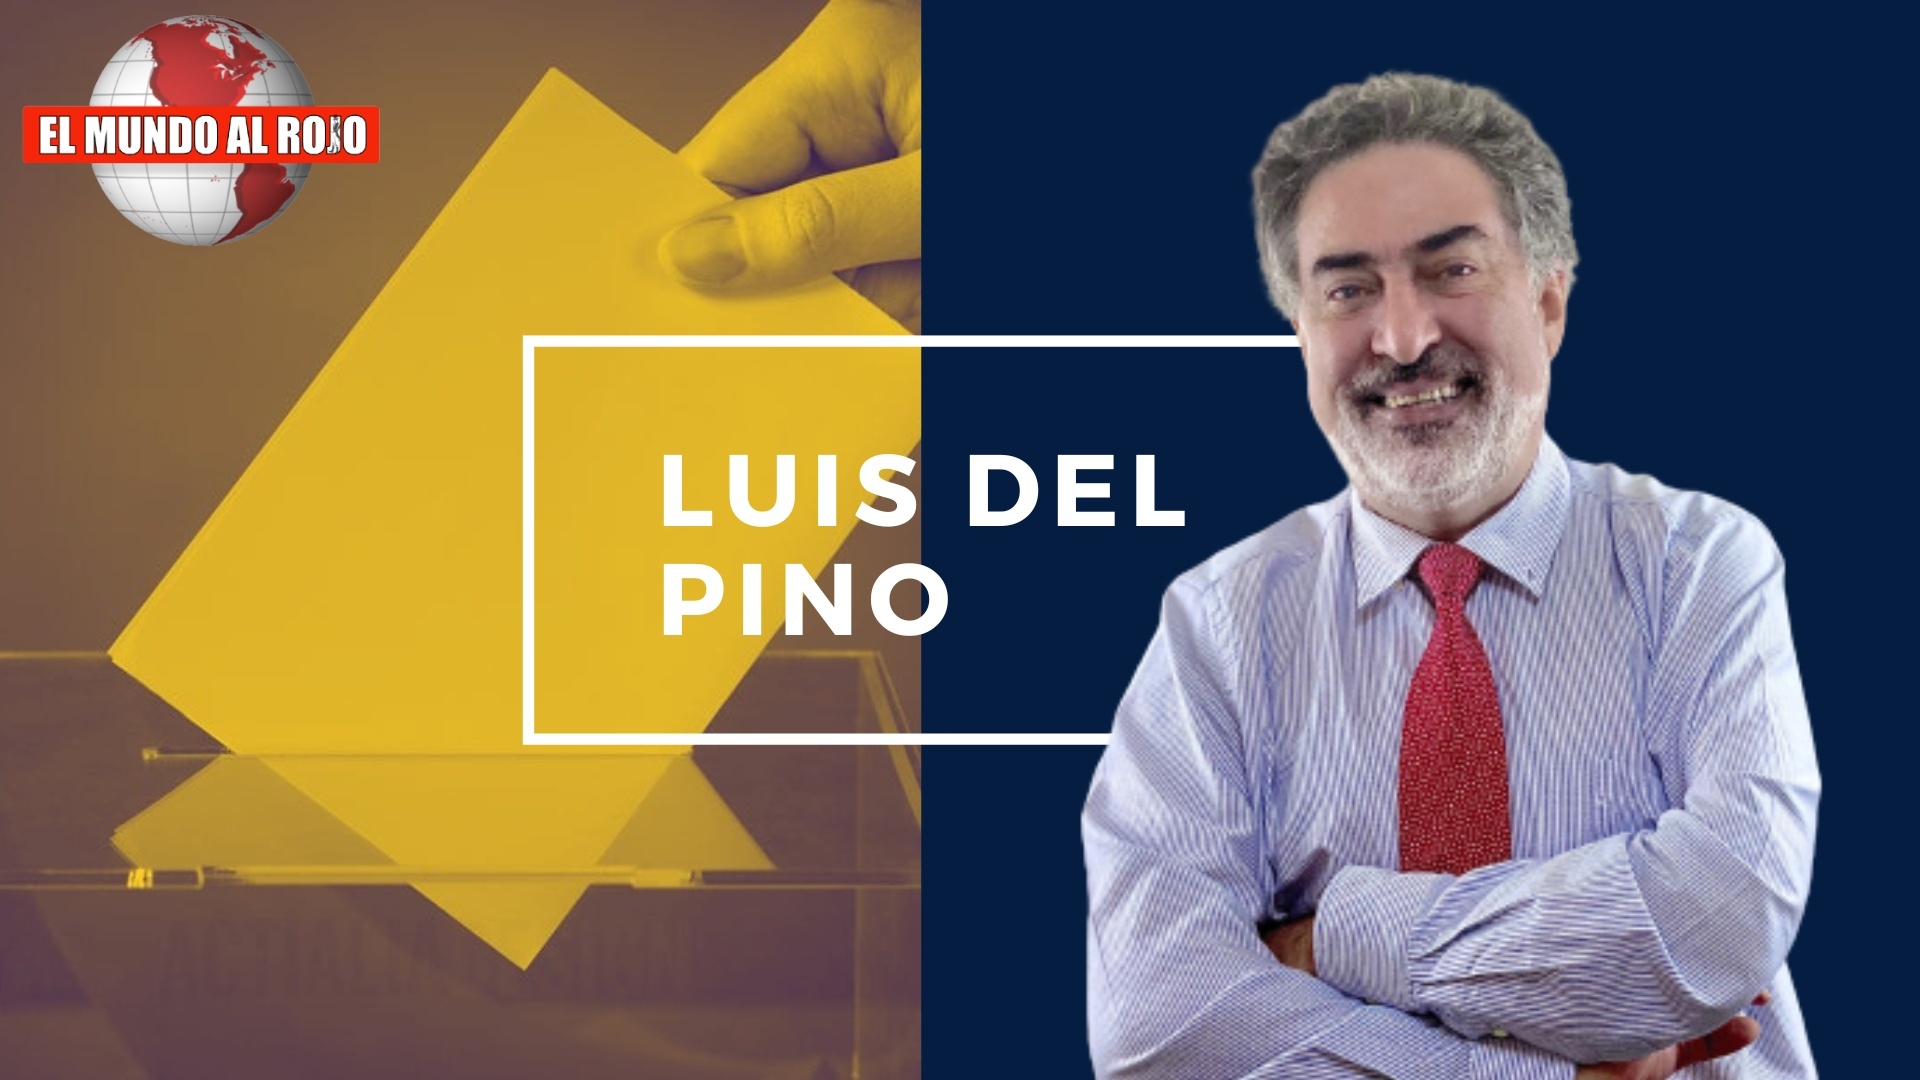 Luis del Pino